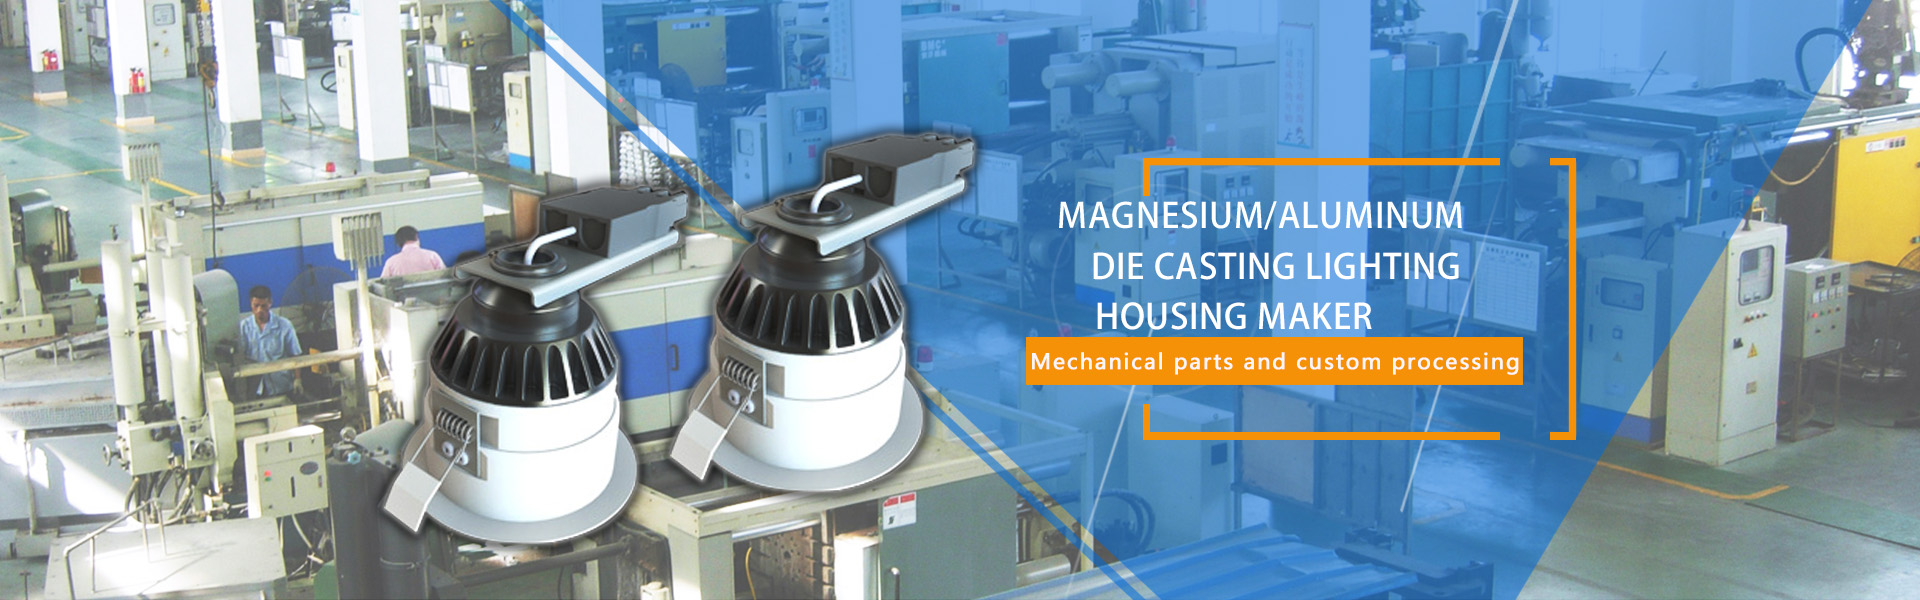 マグネシウムダイカスト、ダイカスト金型、プラスチック射出,Shenzhen Bestcourser Precision Mould Co.,Ltd